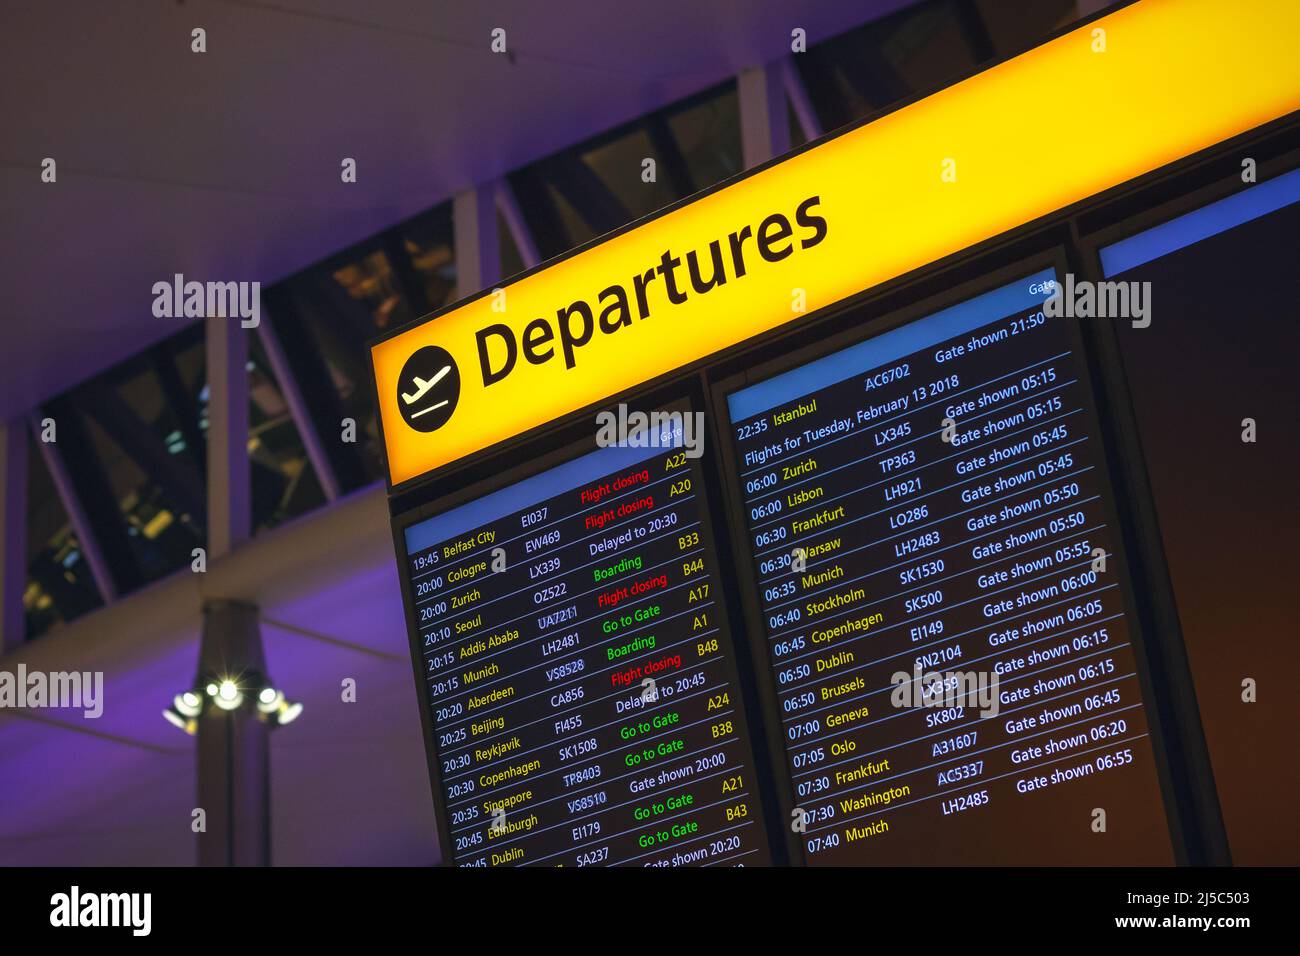 Tableau des départs affichant l'heure, les villes de destination et les informations sur les portes de l'aéroport de Londres Heathrow Banque D'Images